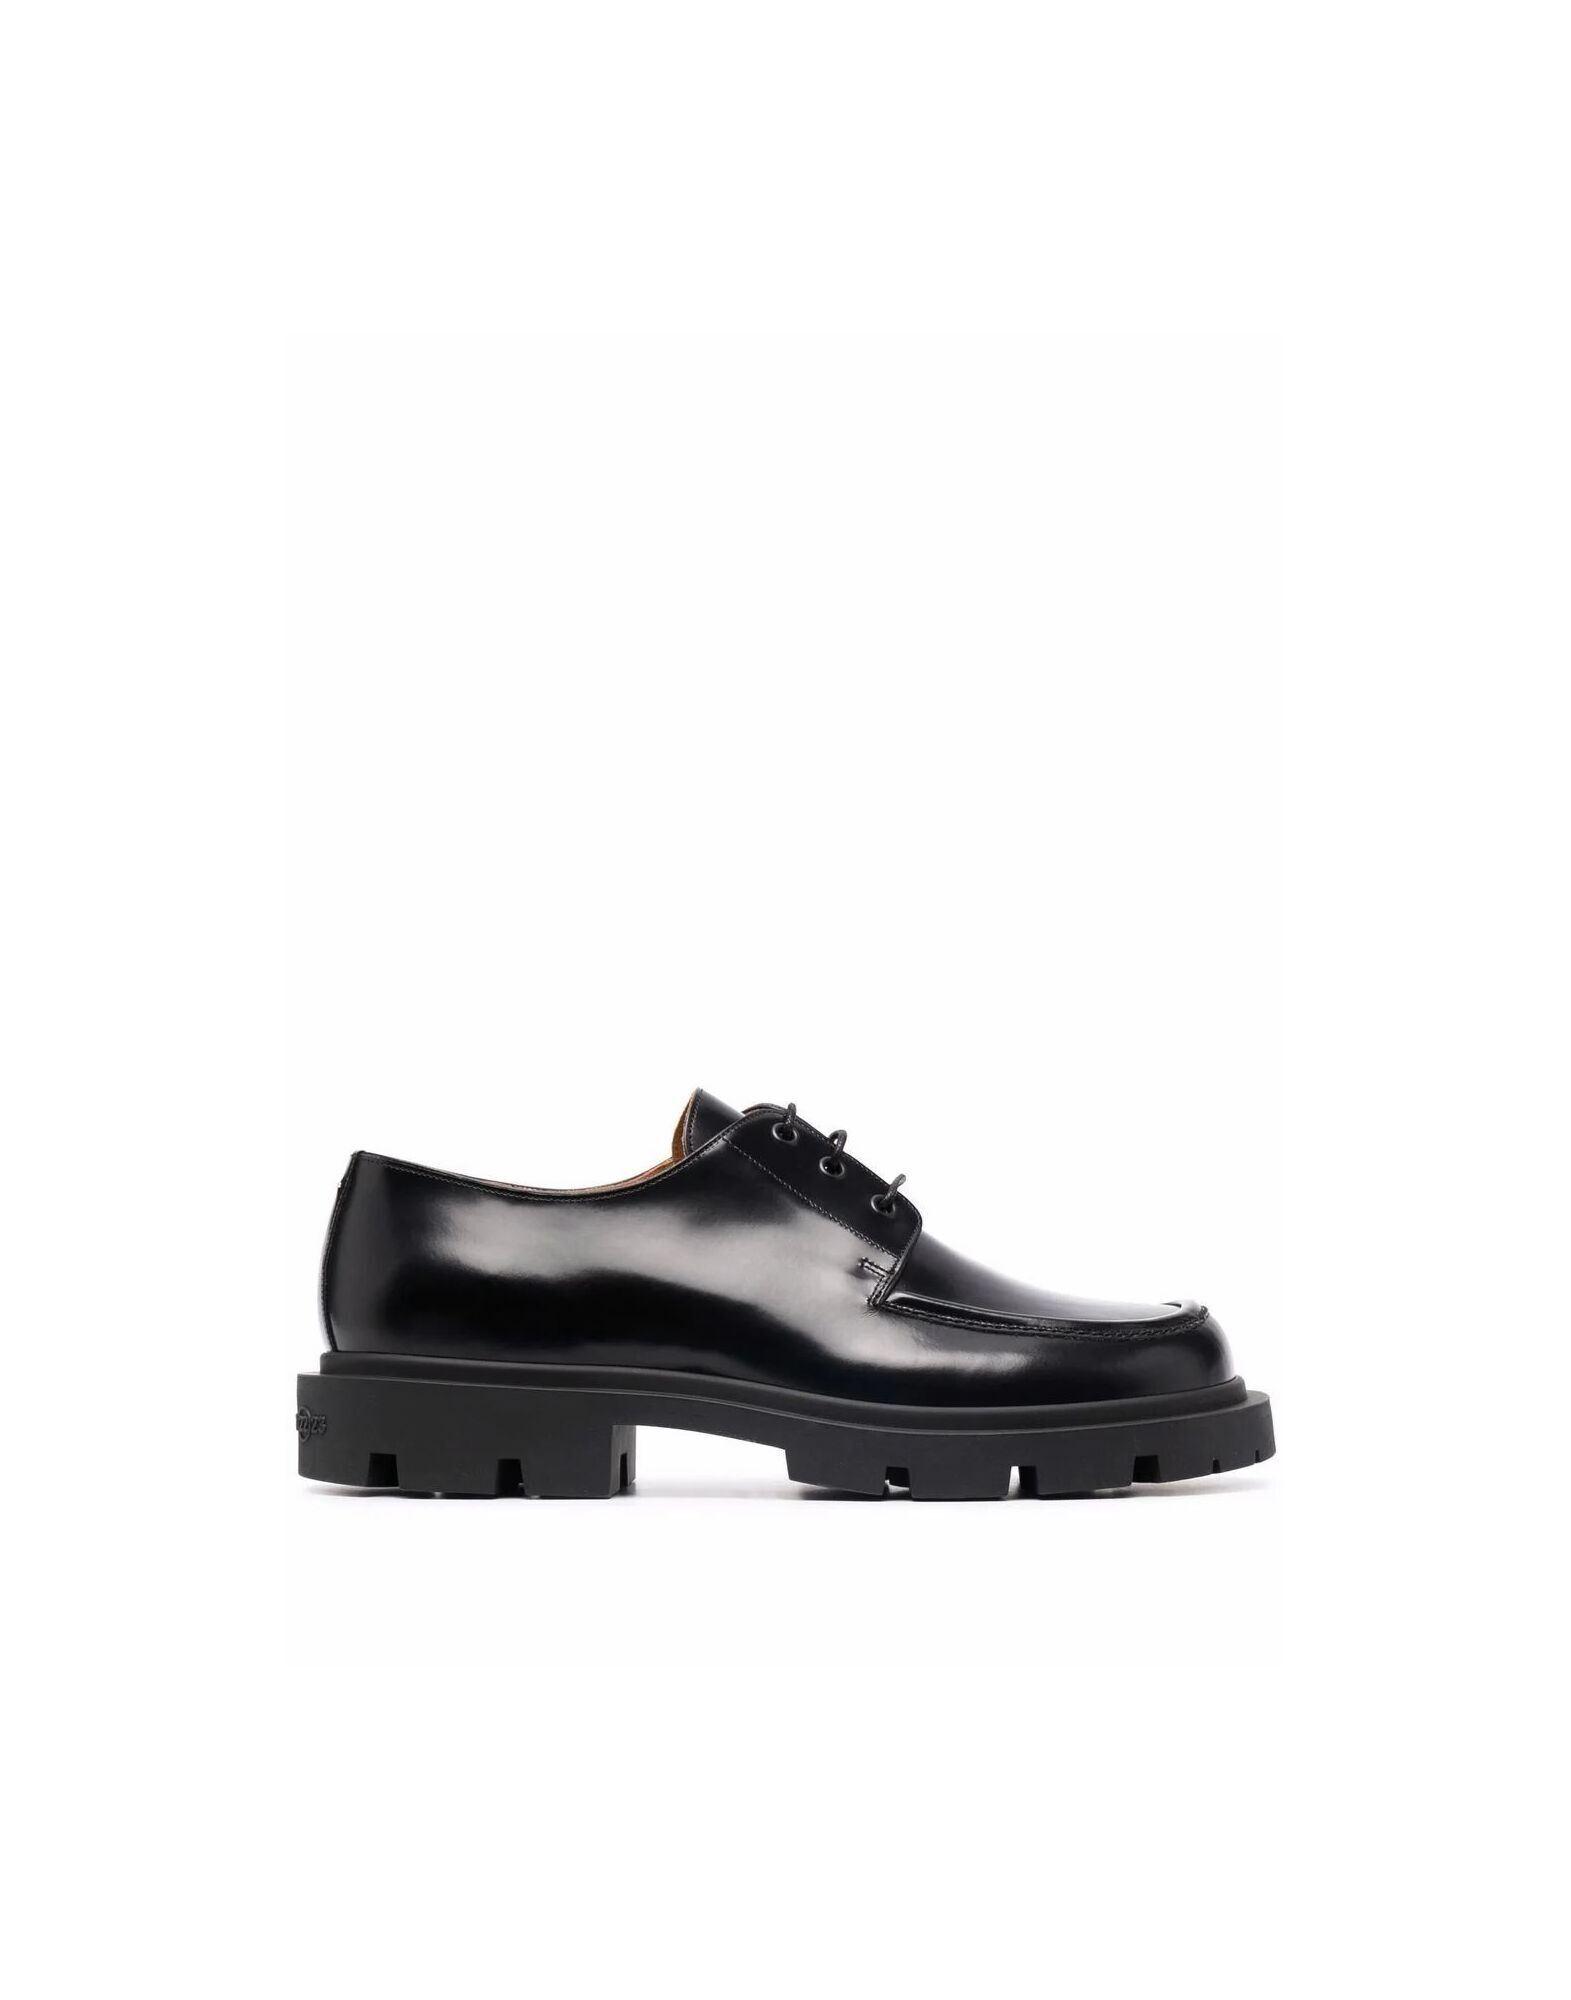 Maison Margiela Leder Bemalte Schnürschuhe in Weiß für Herren Herren Schuhe Schnürschuhe Oxford Schuhe 